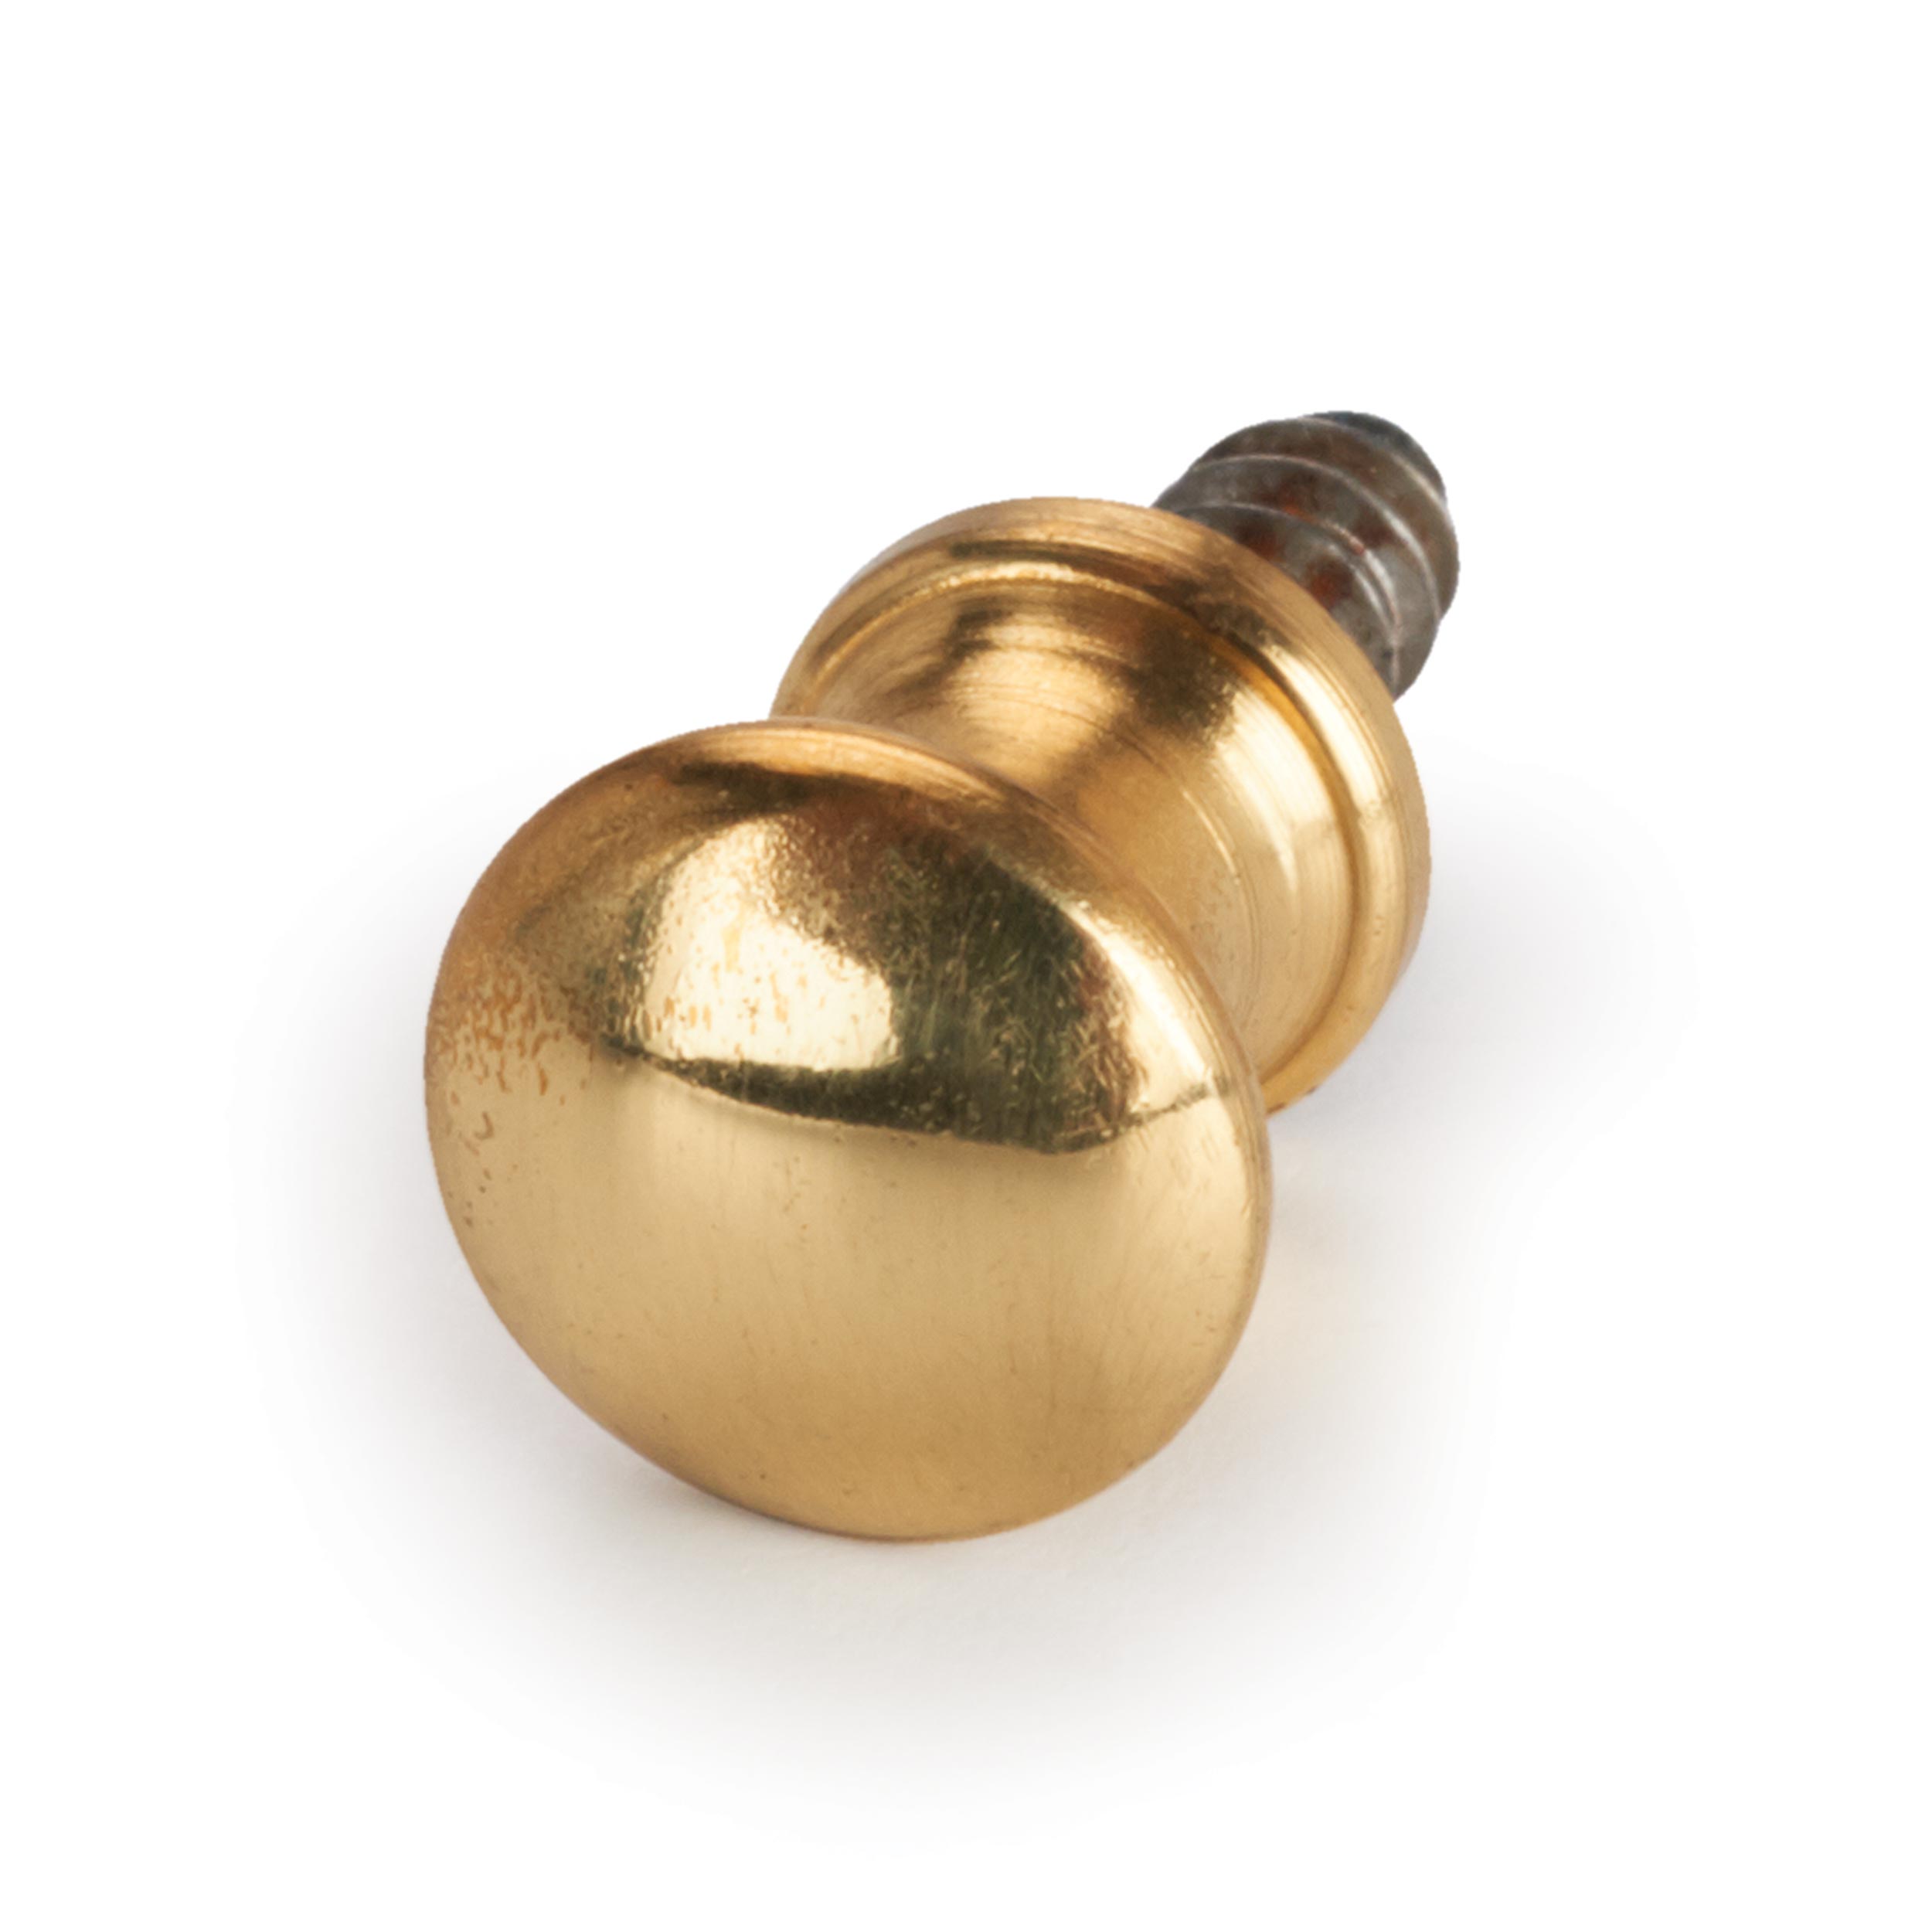 Solid Brass Polished Brass Knob With Wood Screw 9x9x9mm